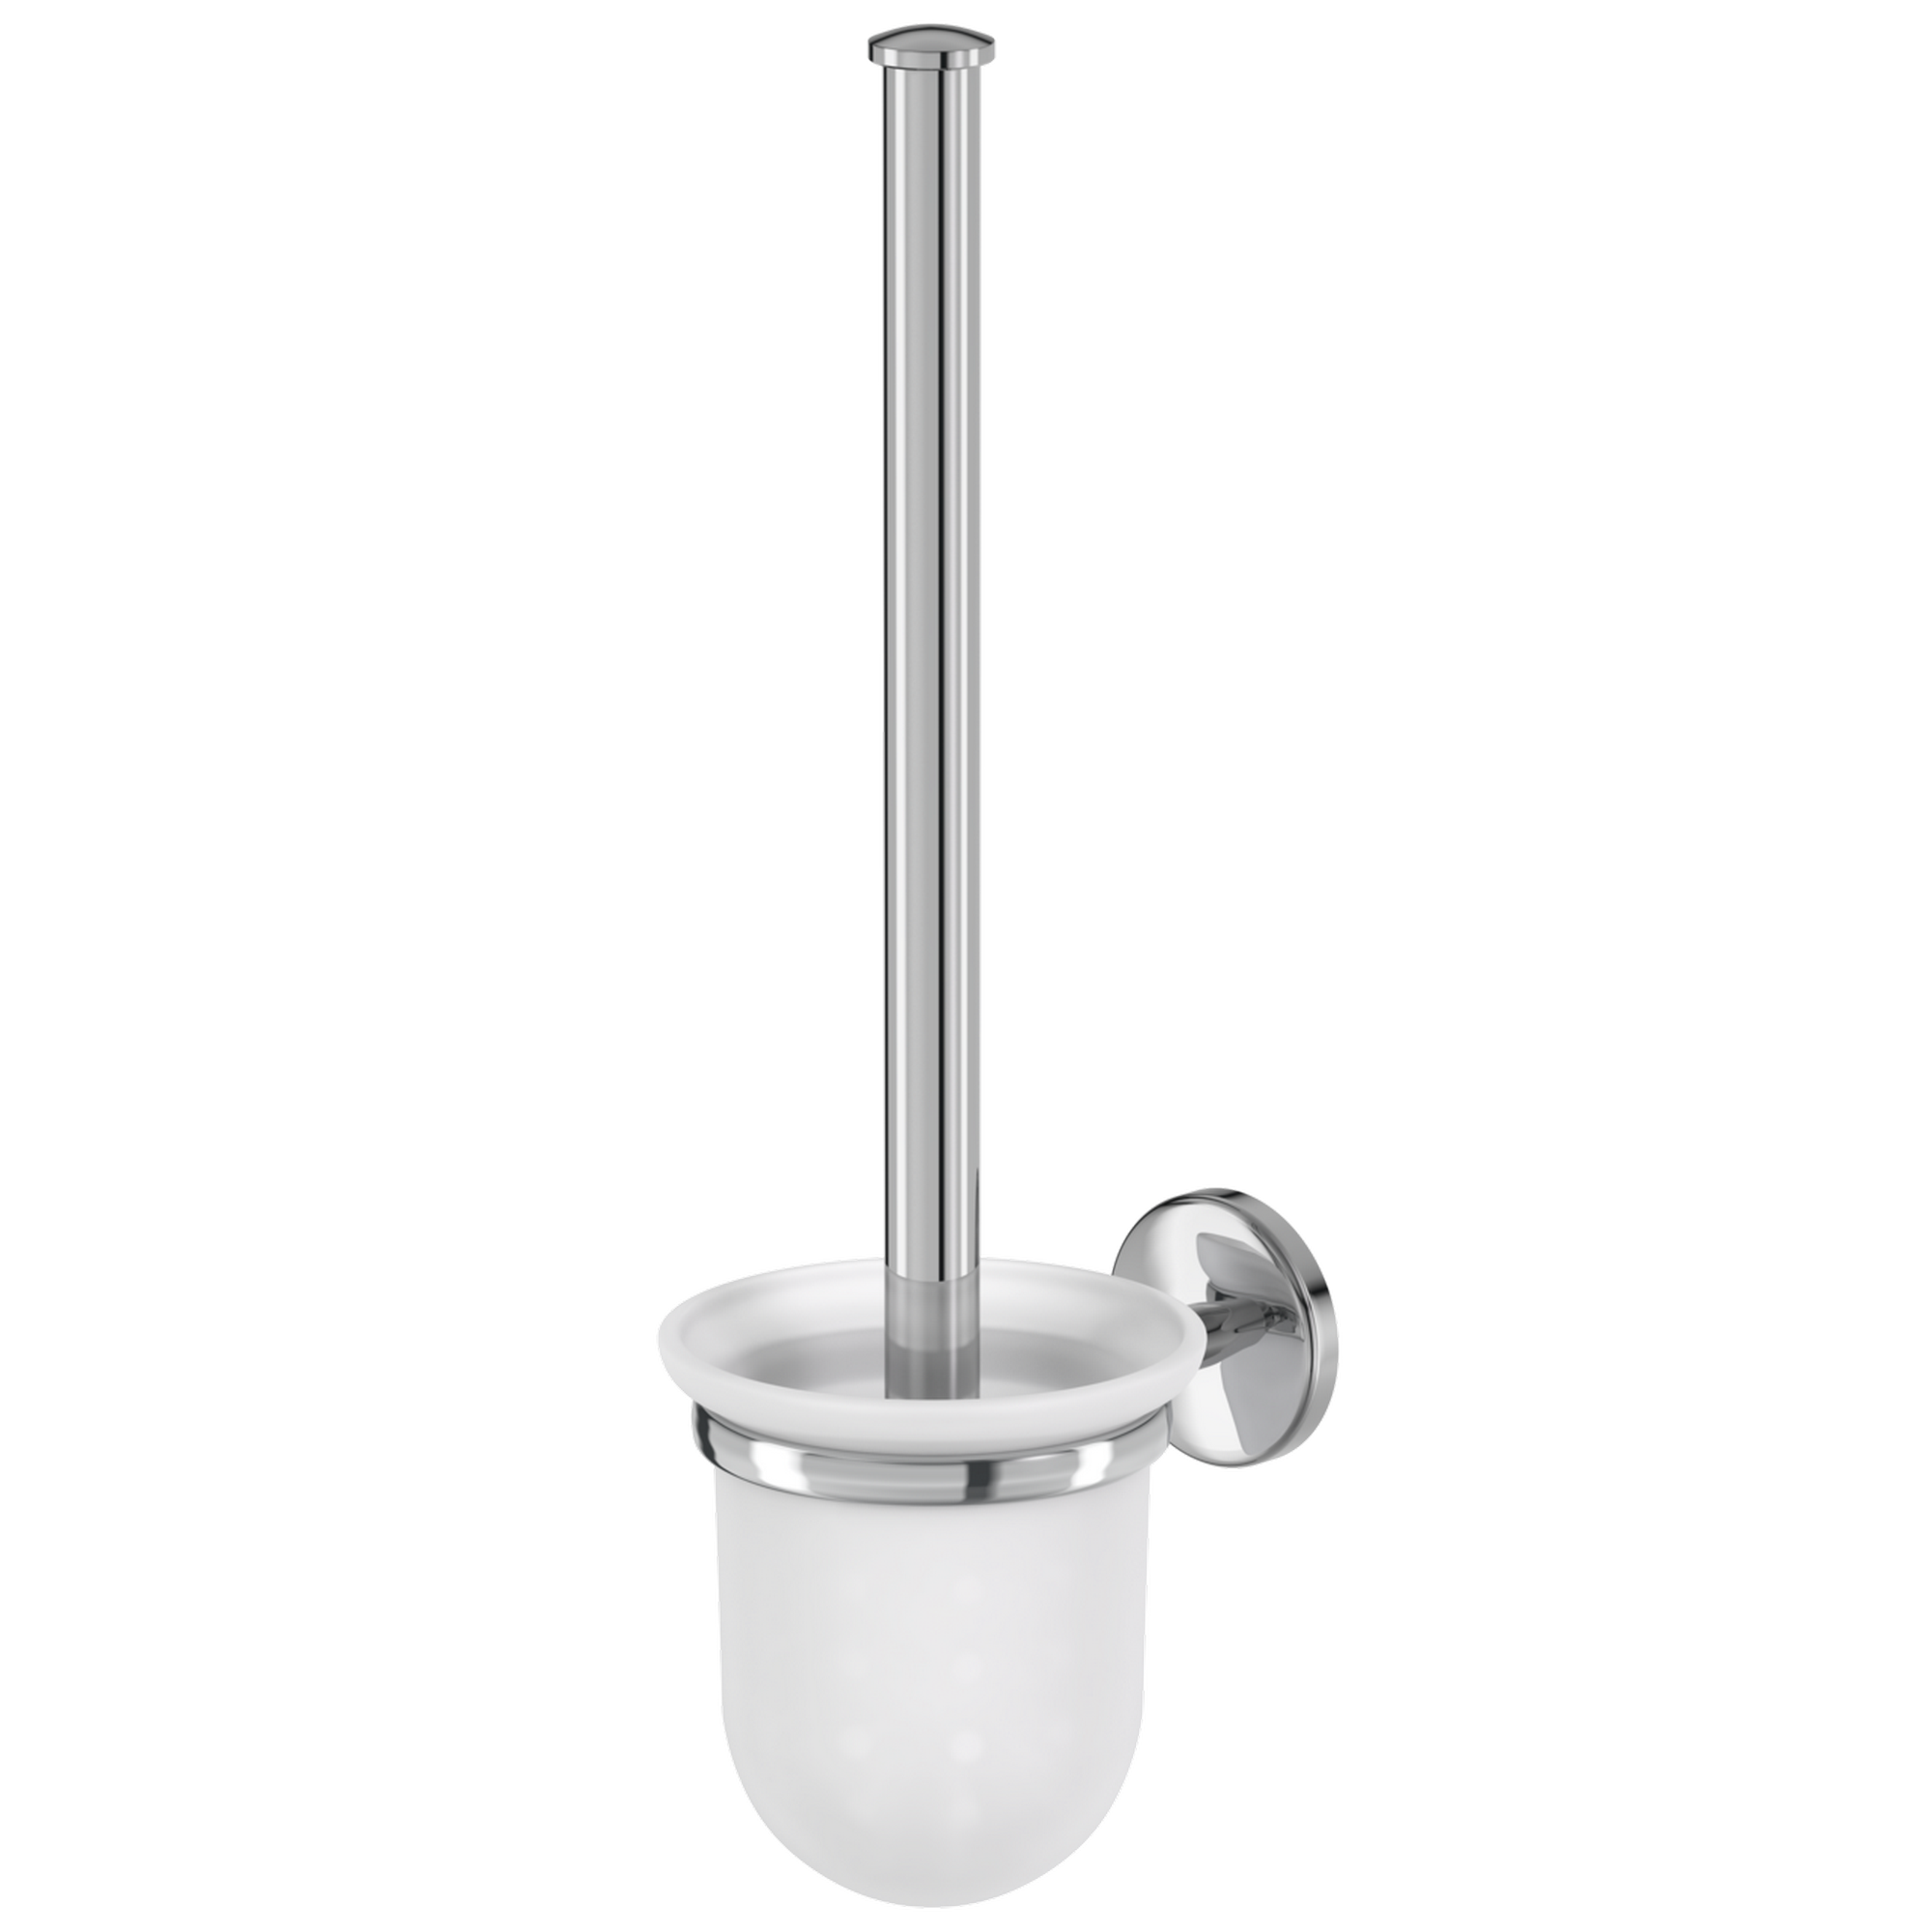 WC-Bürstengarnitur 'Flame' wandhängend rund verchromt/weiß + product picture